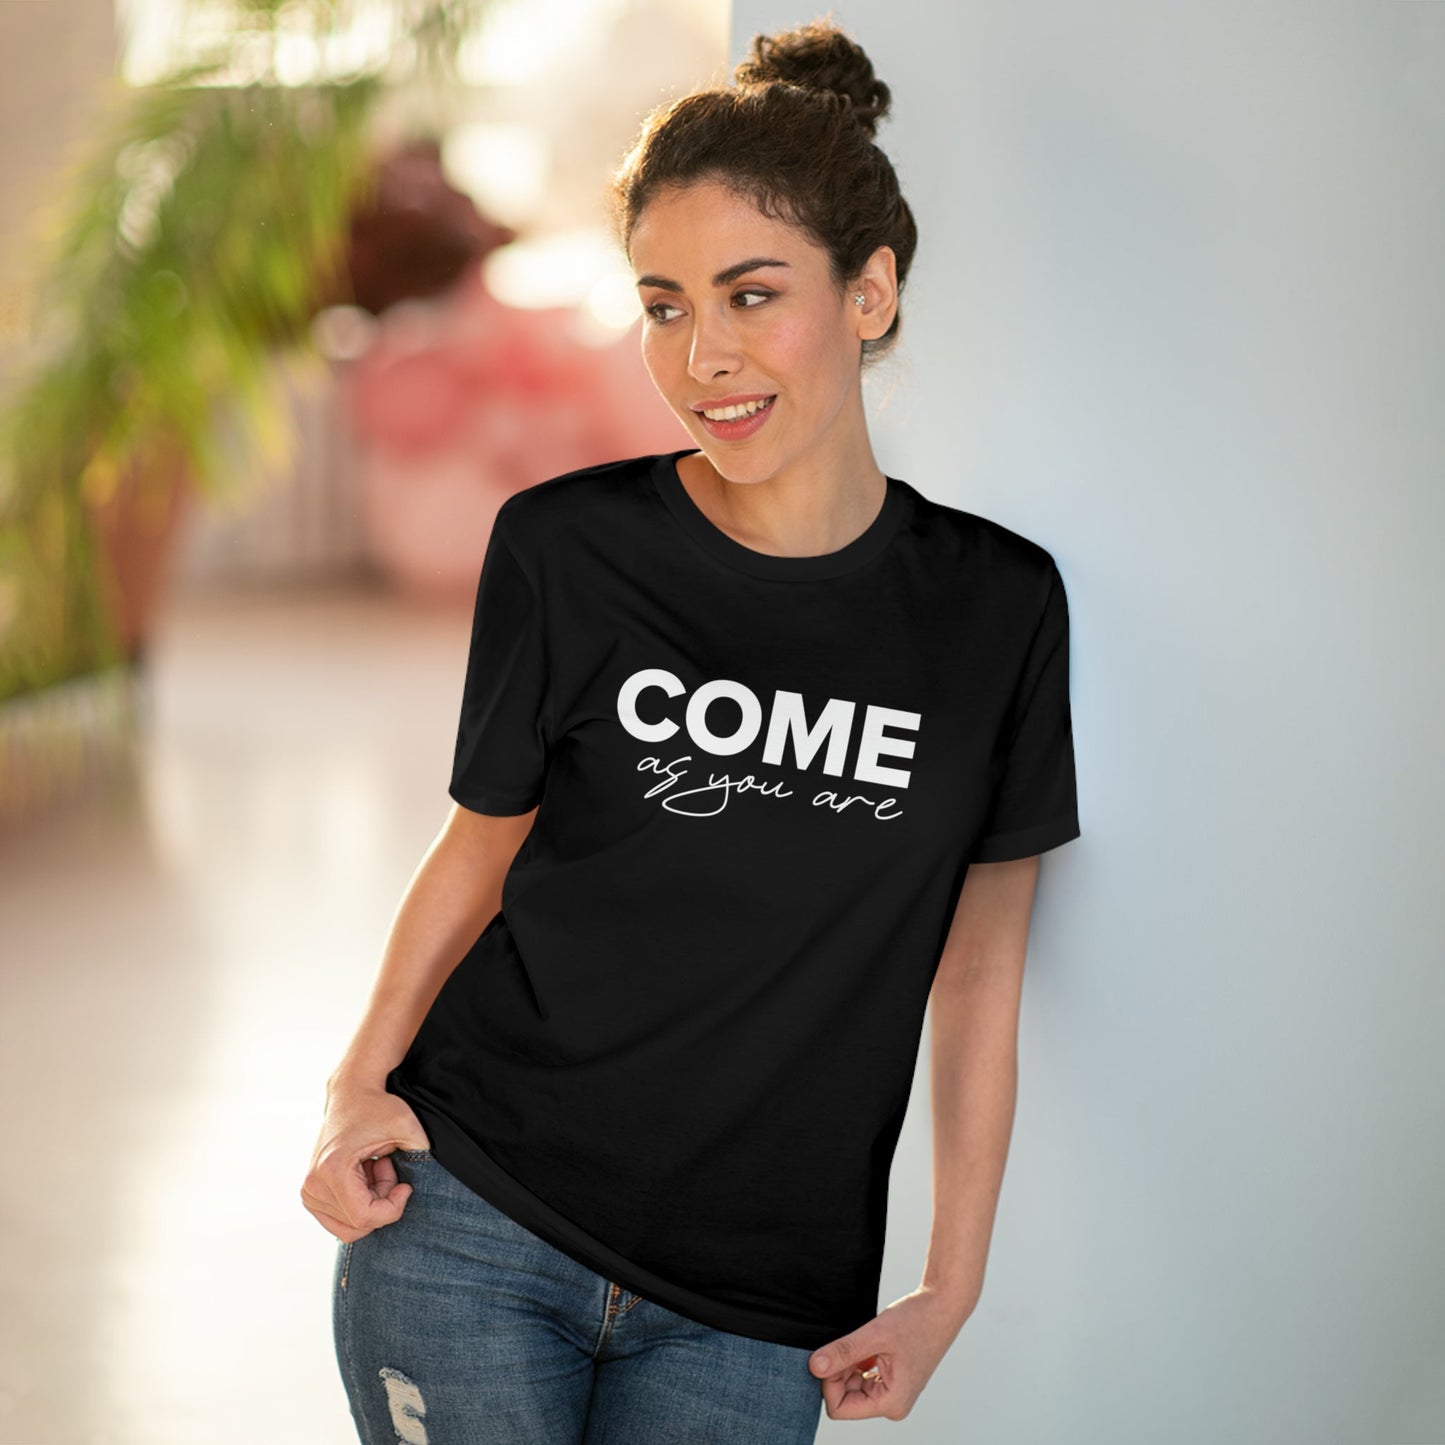 Organic Cotton 'Come As You Are' T-shirt - Fun Tshirt